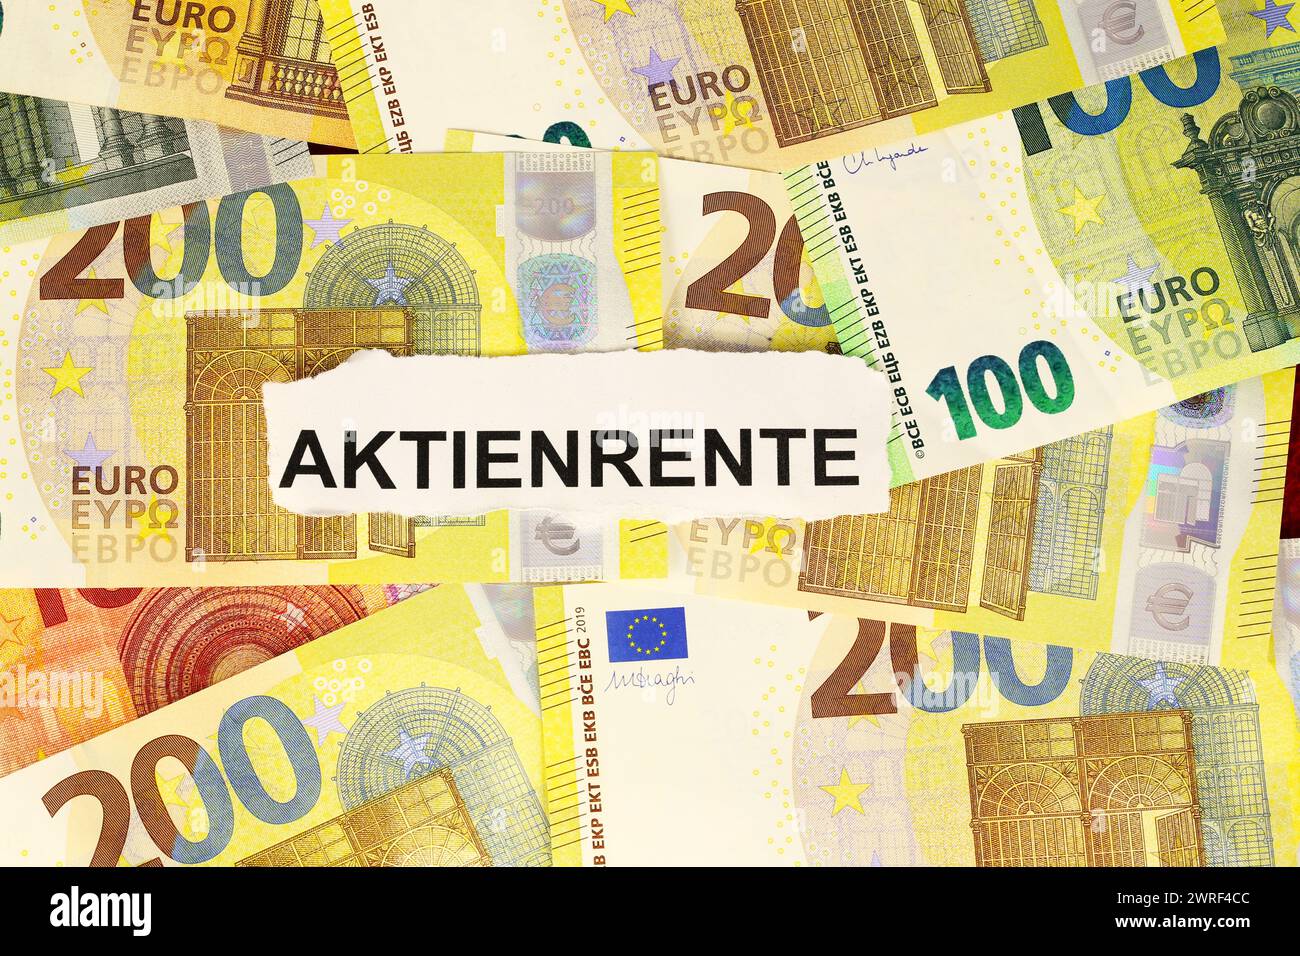 Le mot allemand AKTIENRENTE (quote-part rends) sur les billets en euros (image symbolique) Banque D'Images